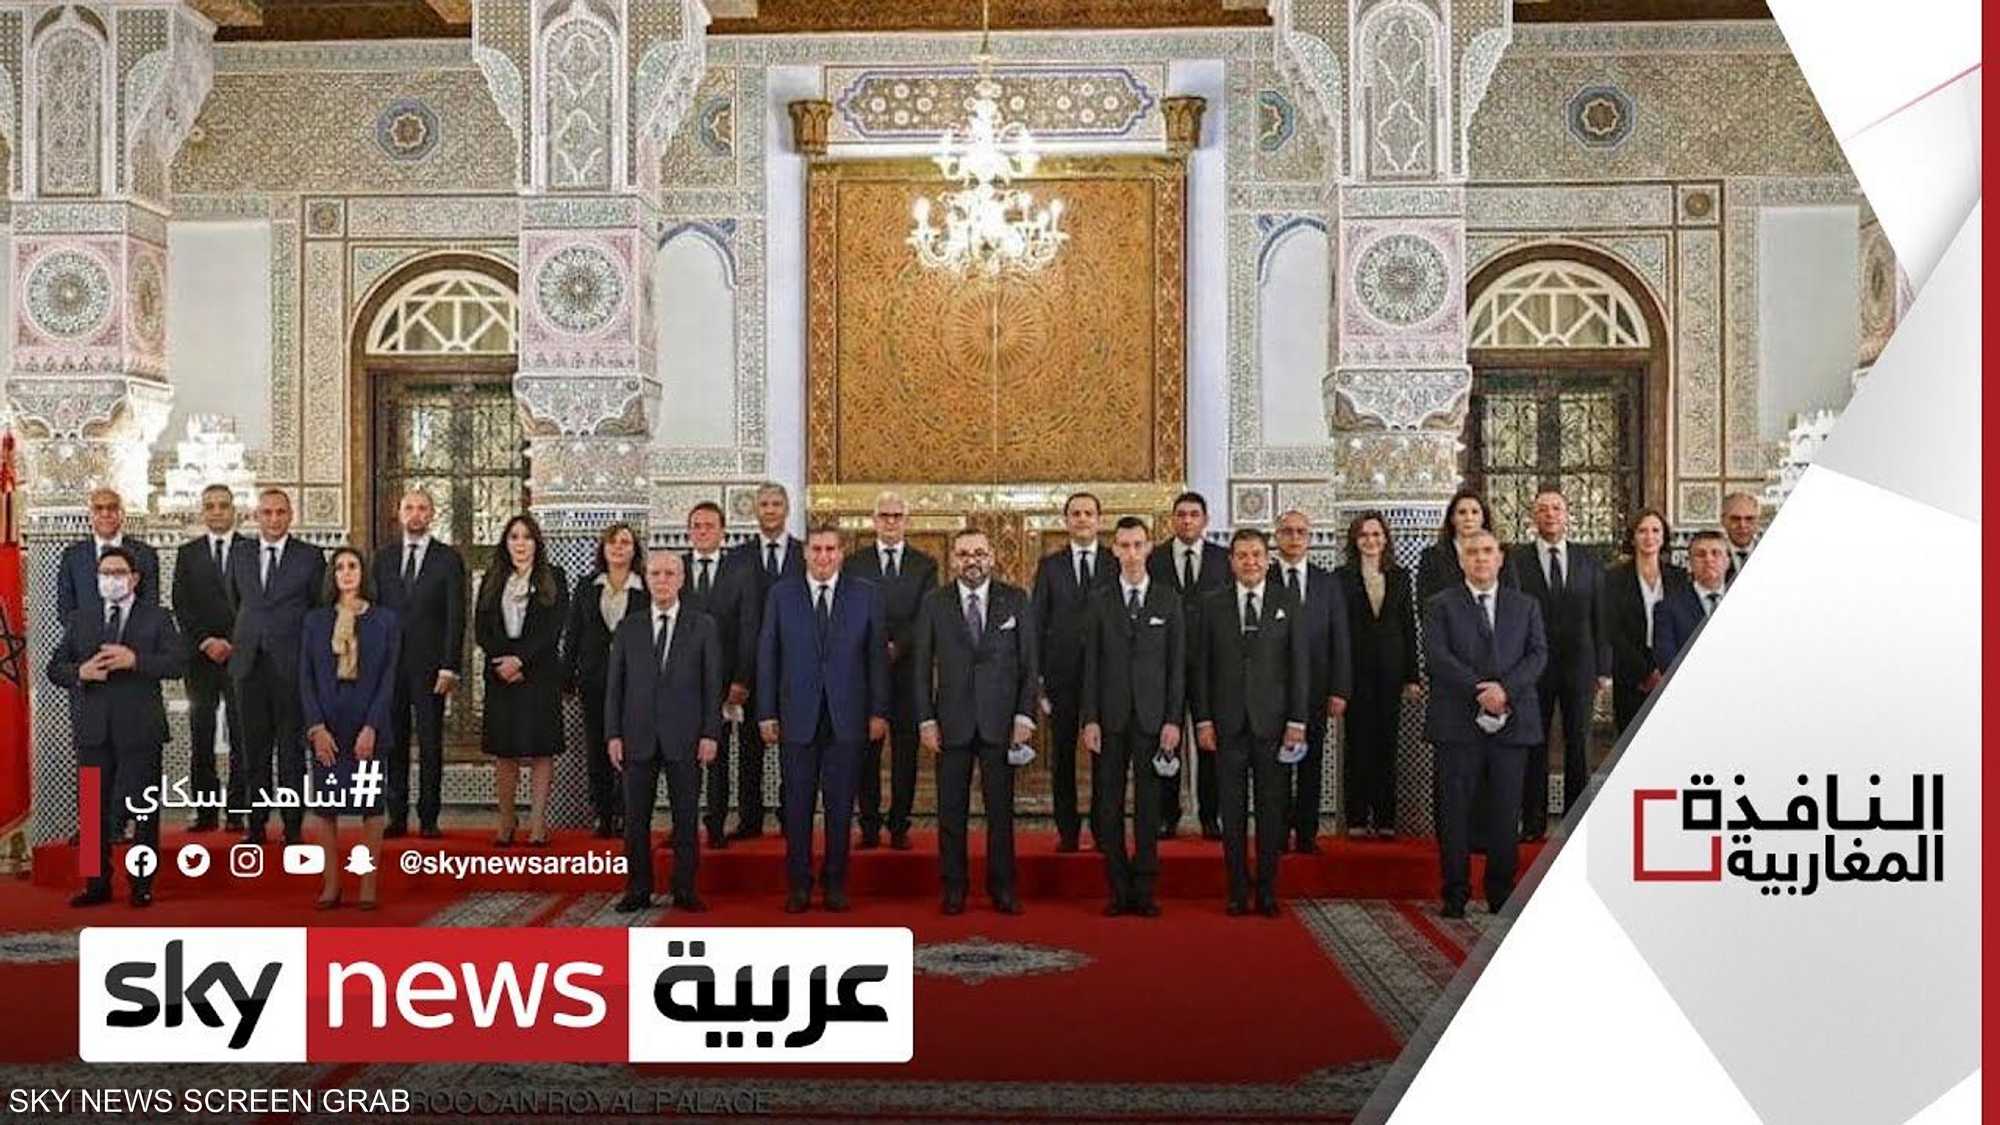 جدل في المغرب حول تولي الوزراء رئاسة البلديات